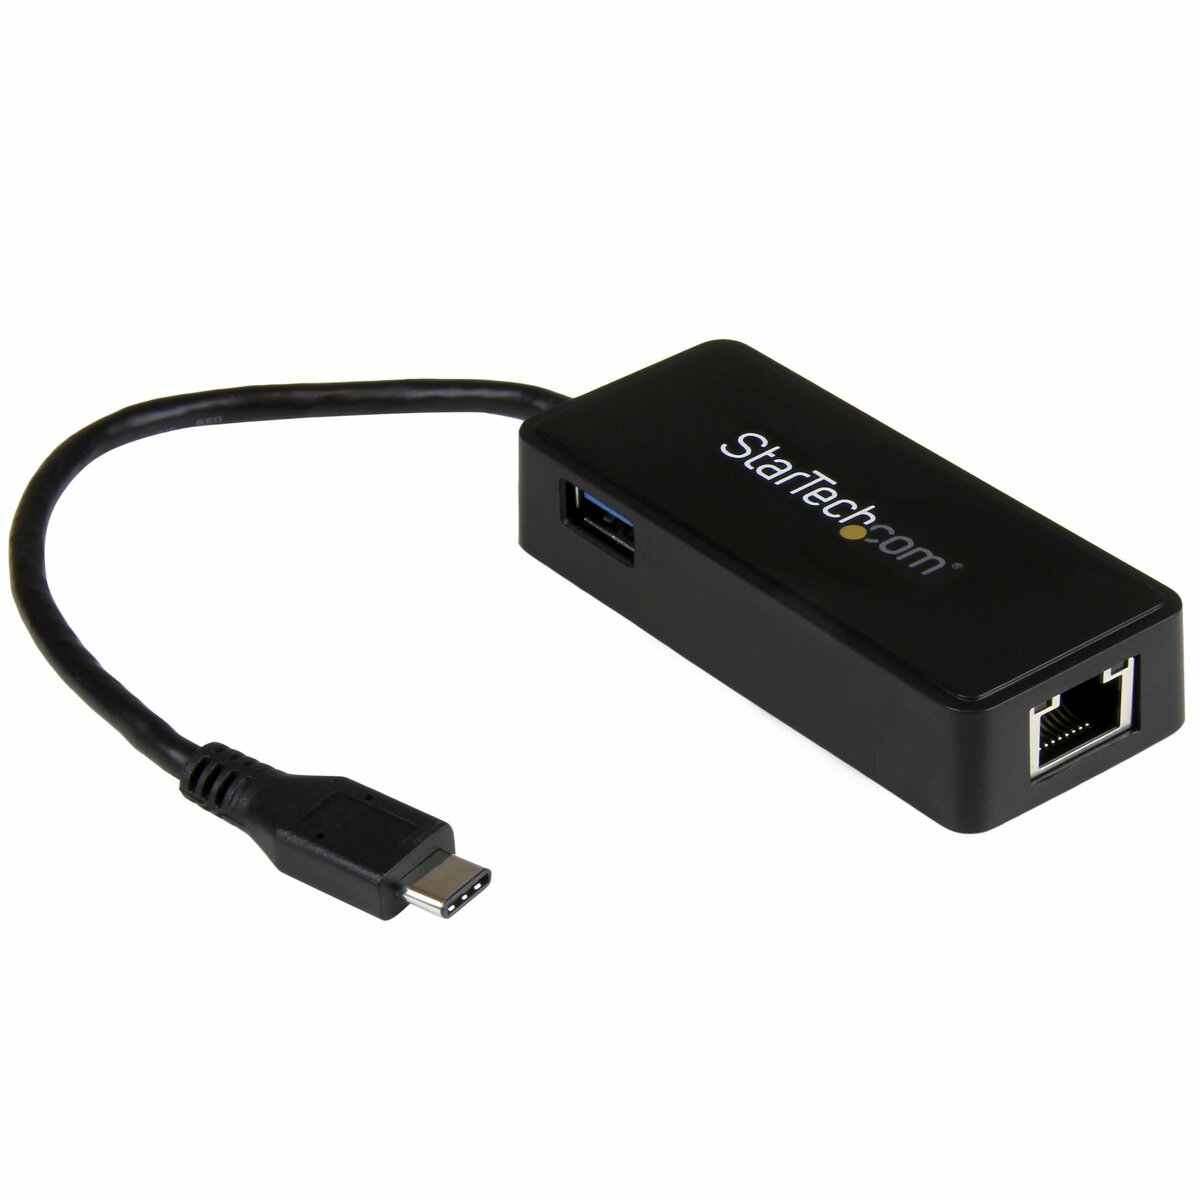 Adaptateur USB-C vers Ethernet, Adaptateur Réseau USB 3.0 vers Gigabit  Ethernet - 10/100/1000 Mbps, Adaptateur Ethernet USB-C vers RJ45 (GbE),  Câble de Connexion de 30,4cm, Installation Sans Pilote (US1GC30B2)